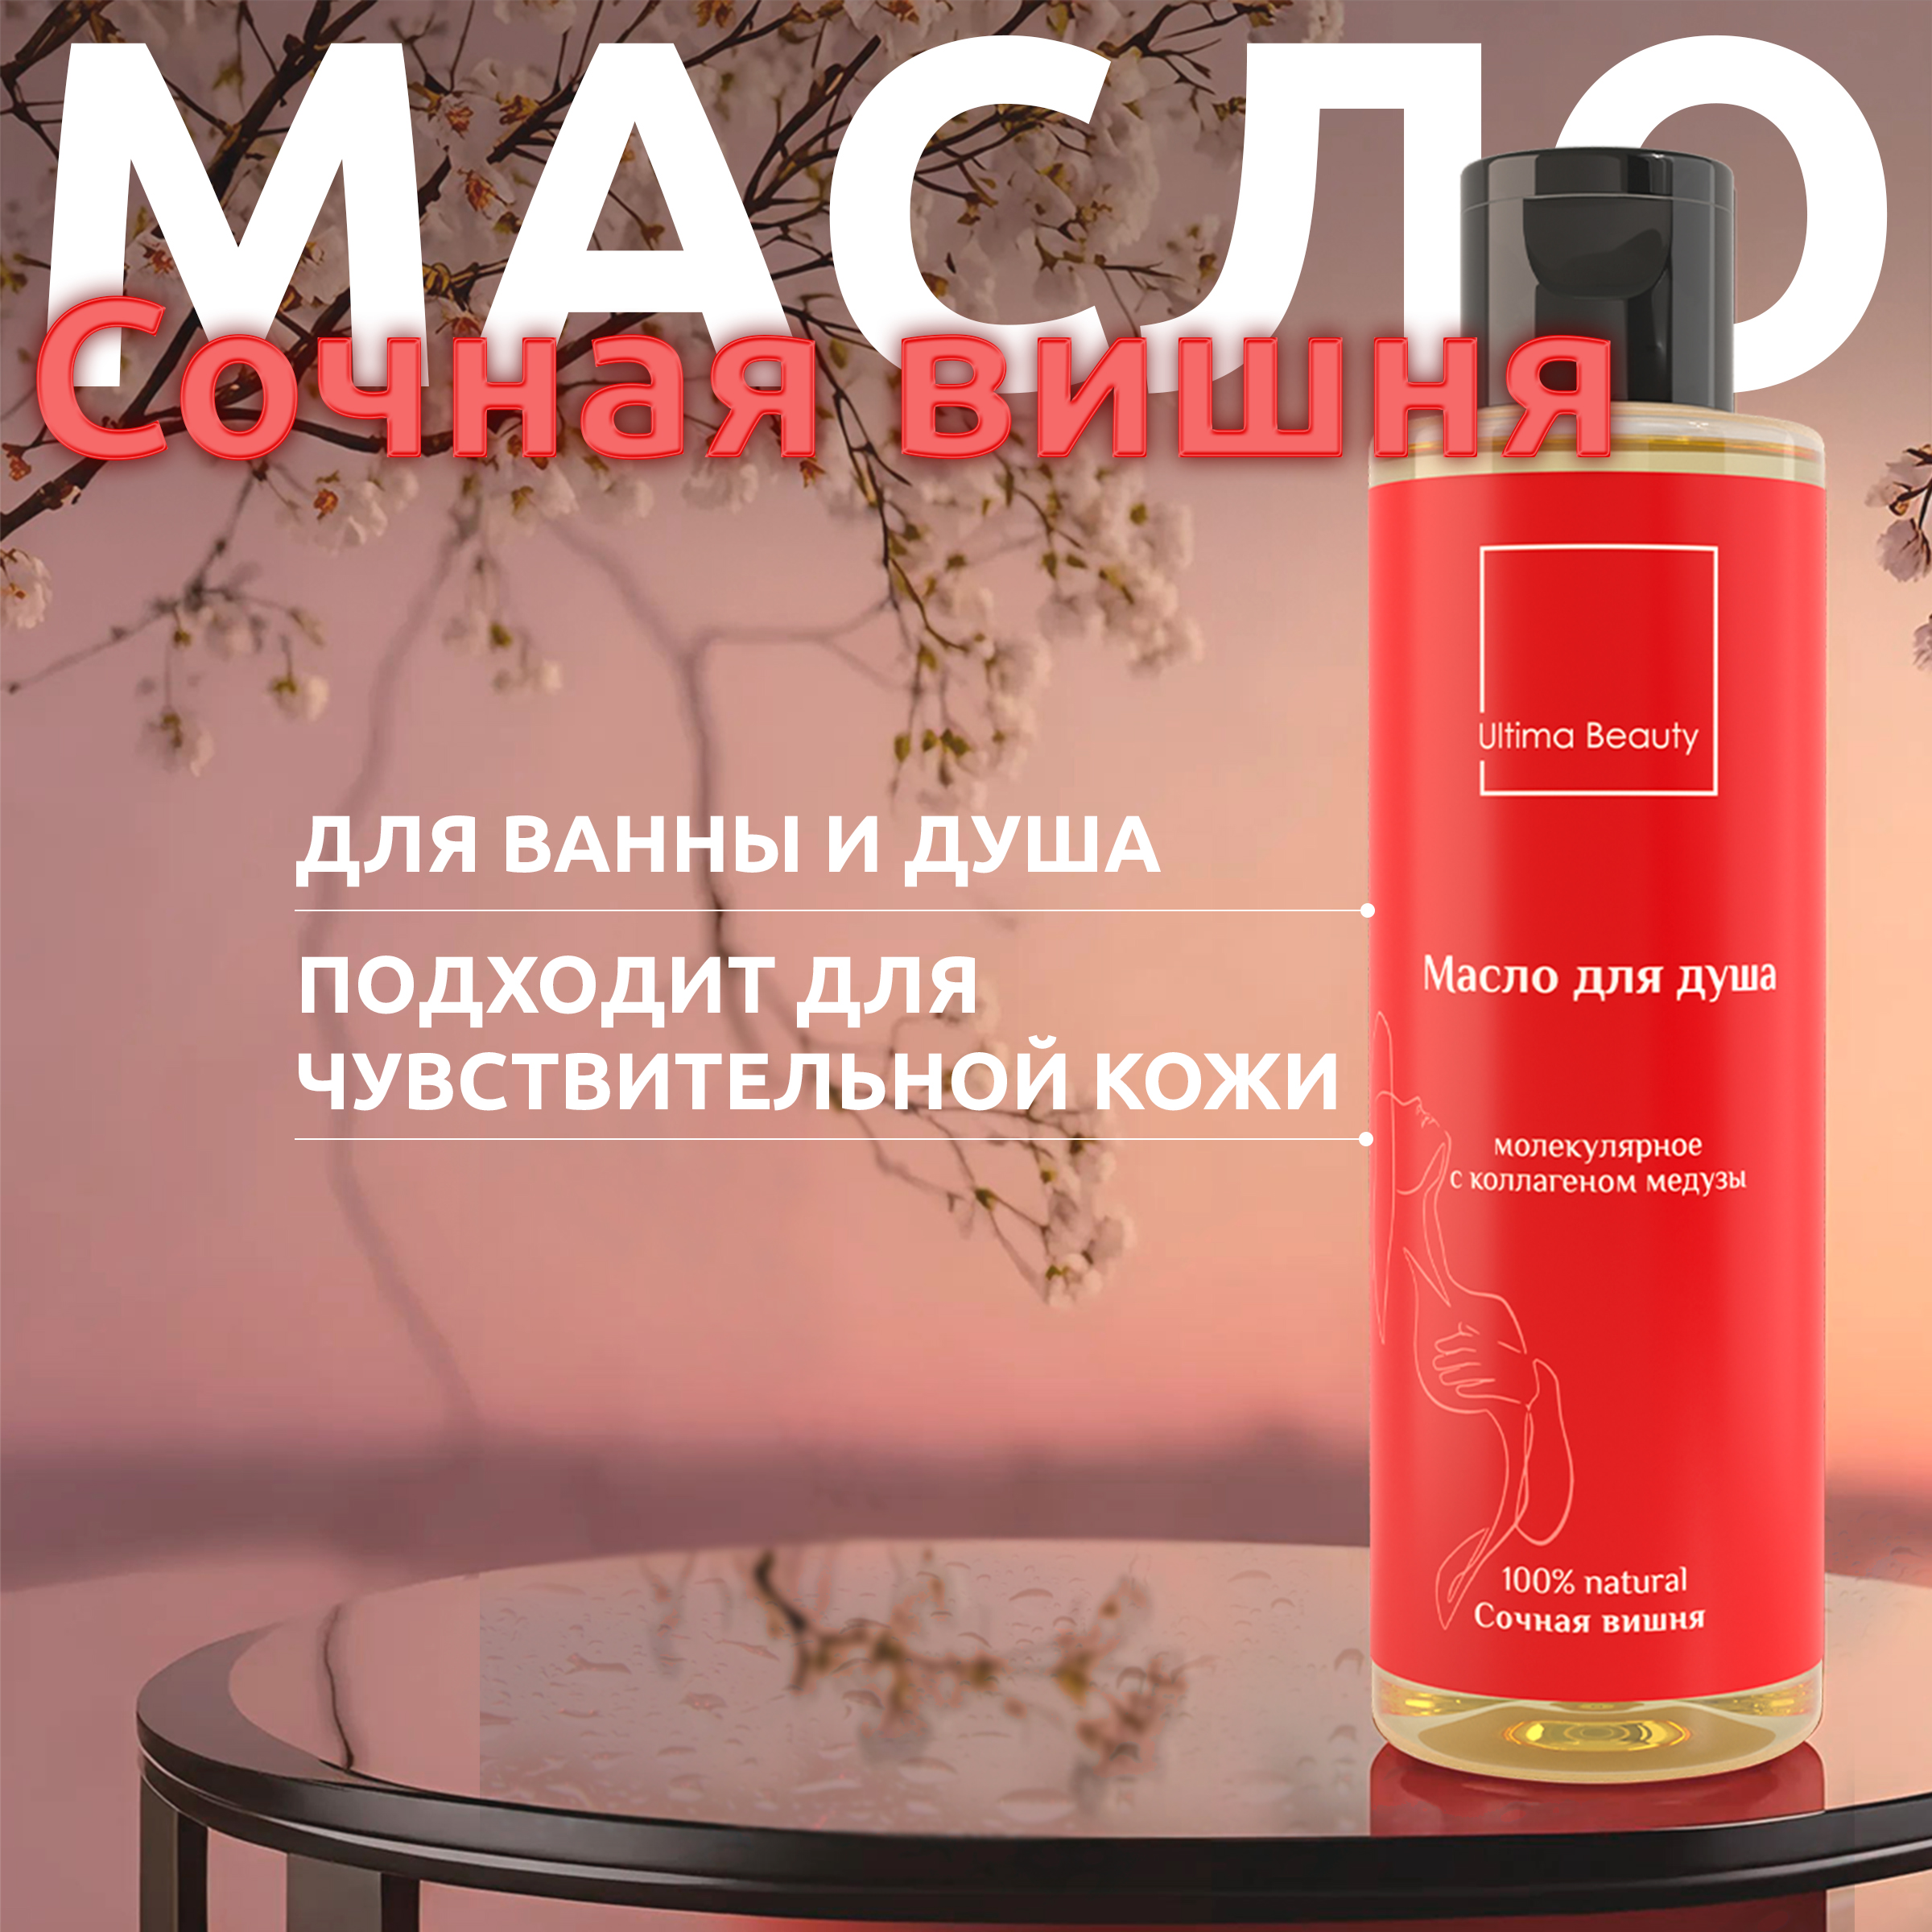 Гипоаллергенное масло для душа Ultima Beauty с ароматом сочной вишни rada russkikh гидрофильное масло для рук с ароматом вишни 100 0